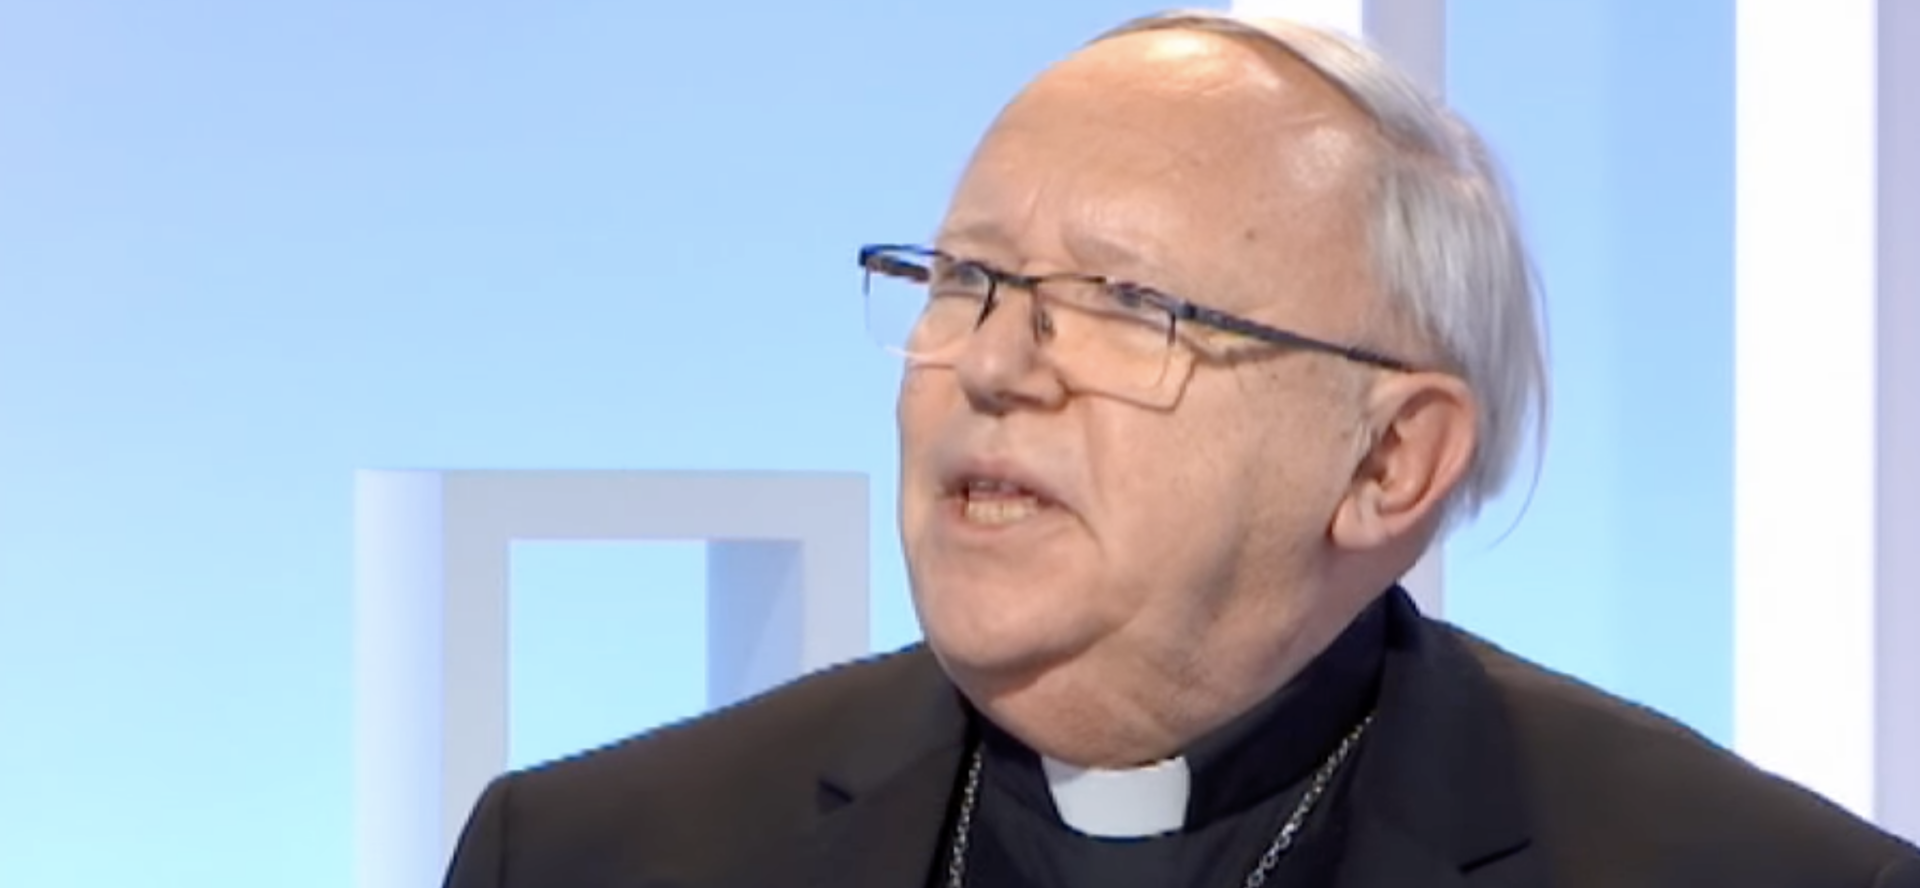 Le cardinal Jean-Pierre Ricard a reconnu avoir eu une "conduite répréhensible" vis-à-vis d'une adolescente | capture d'écran YouTube